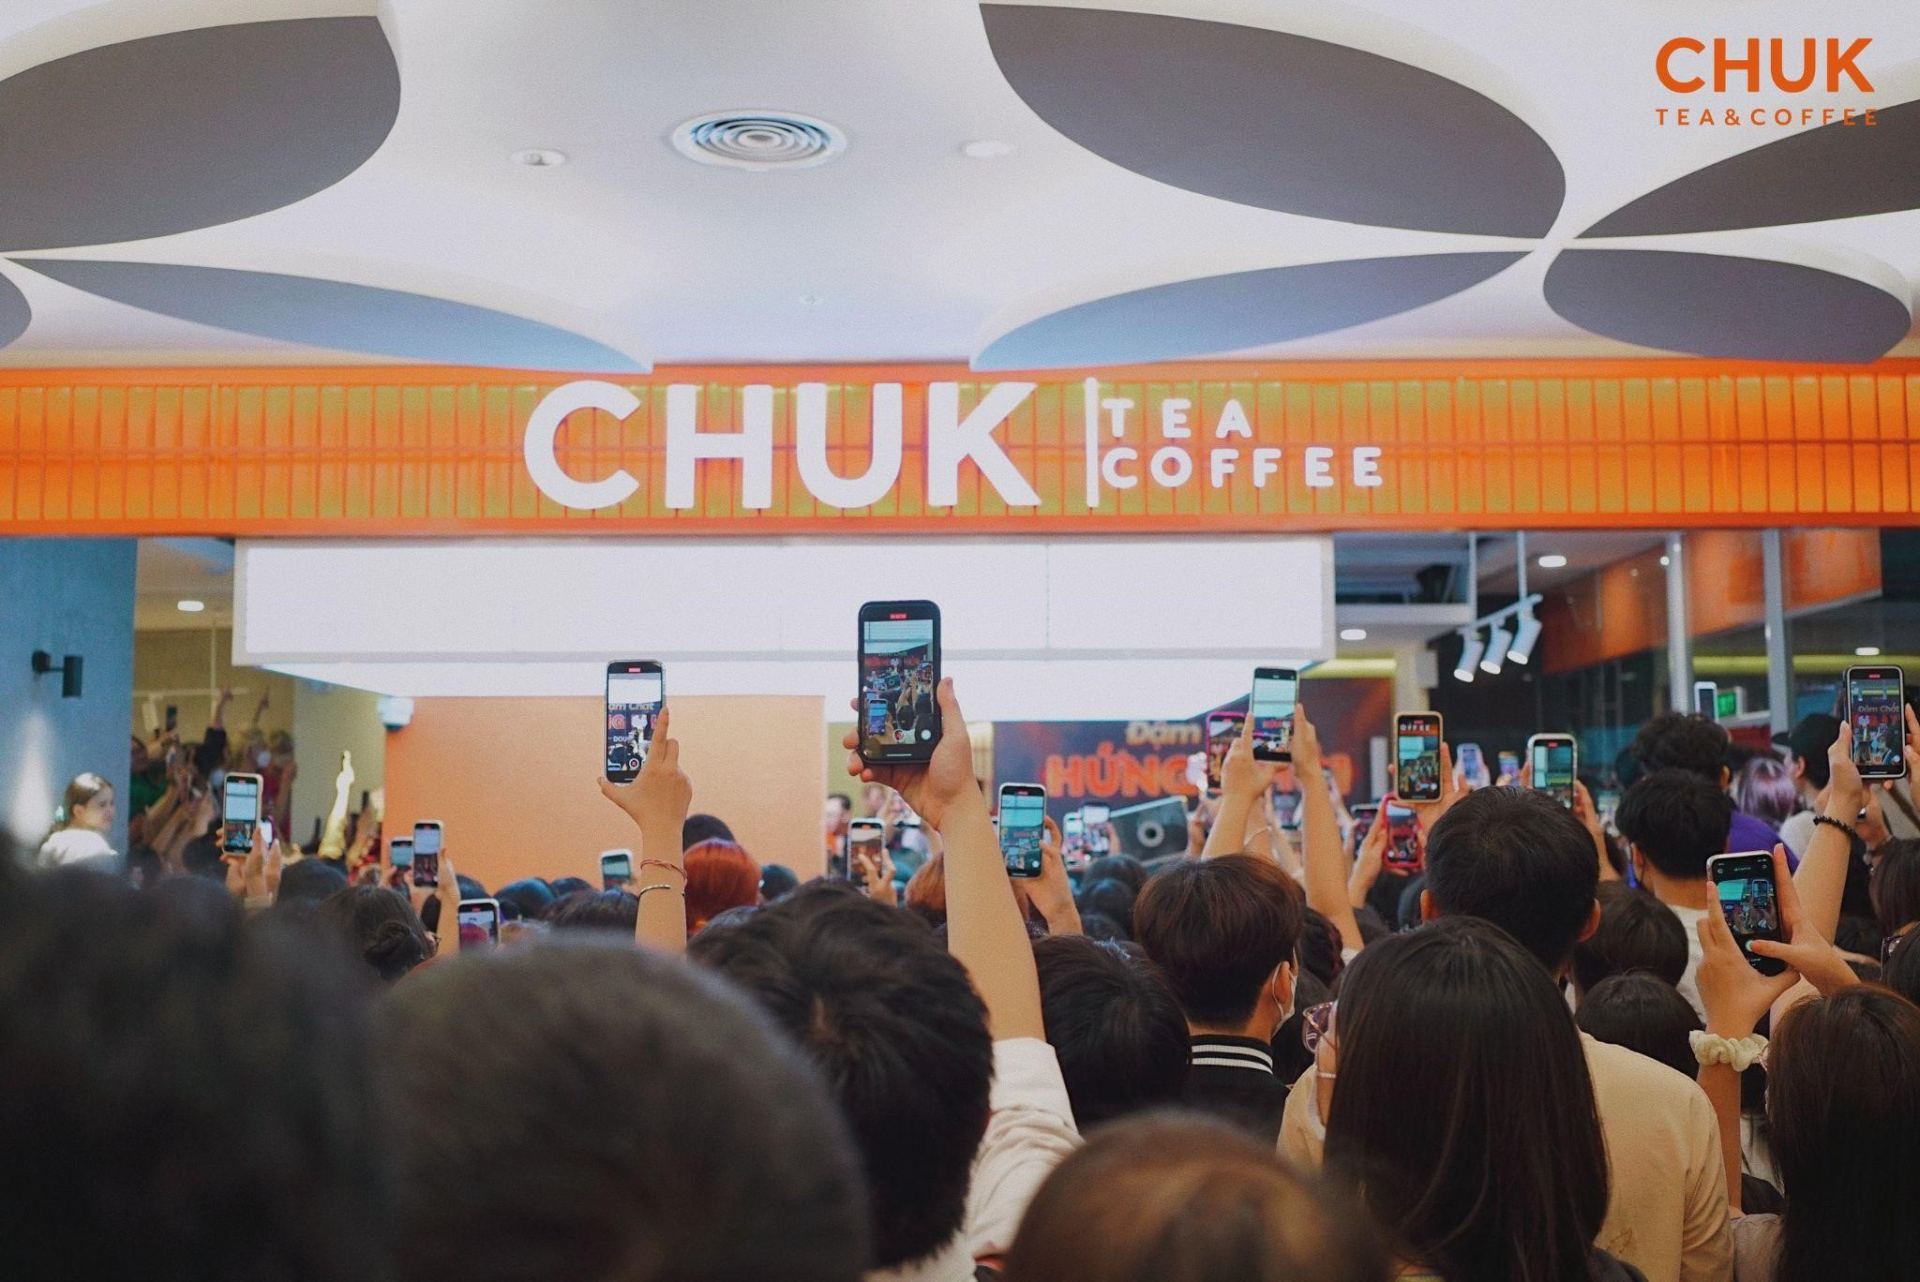 Minishow đón “nhà mới” của Chuk Tea & Coffee đậm chất hứng khởi với sự xuất hiện của Double2T - ảnh 1